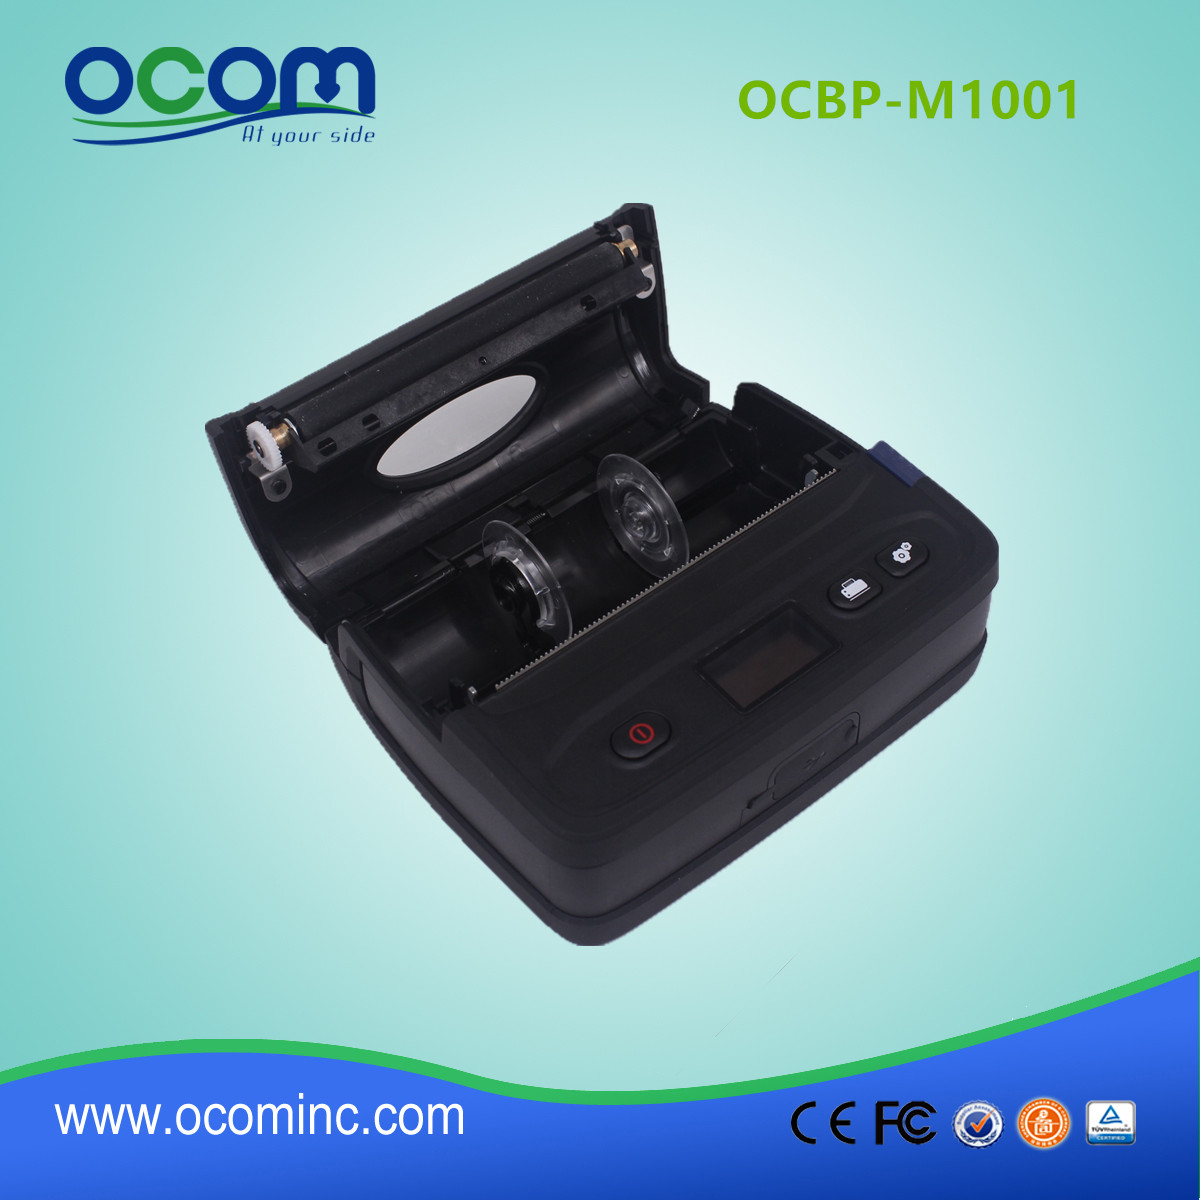 4 "Portable Bluetooth kodów kreskowych Drukarka termiczna-OCBP-M1001